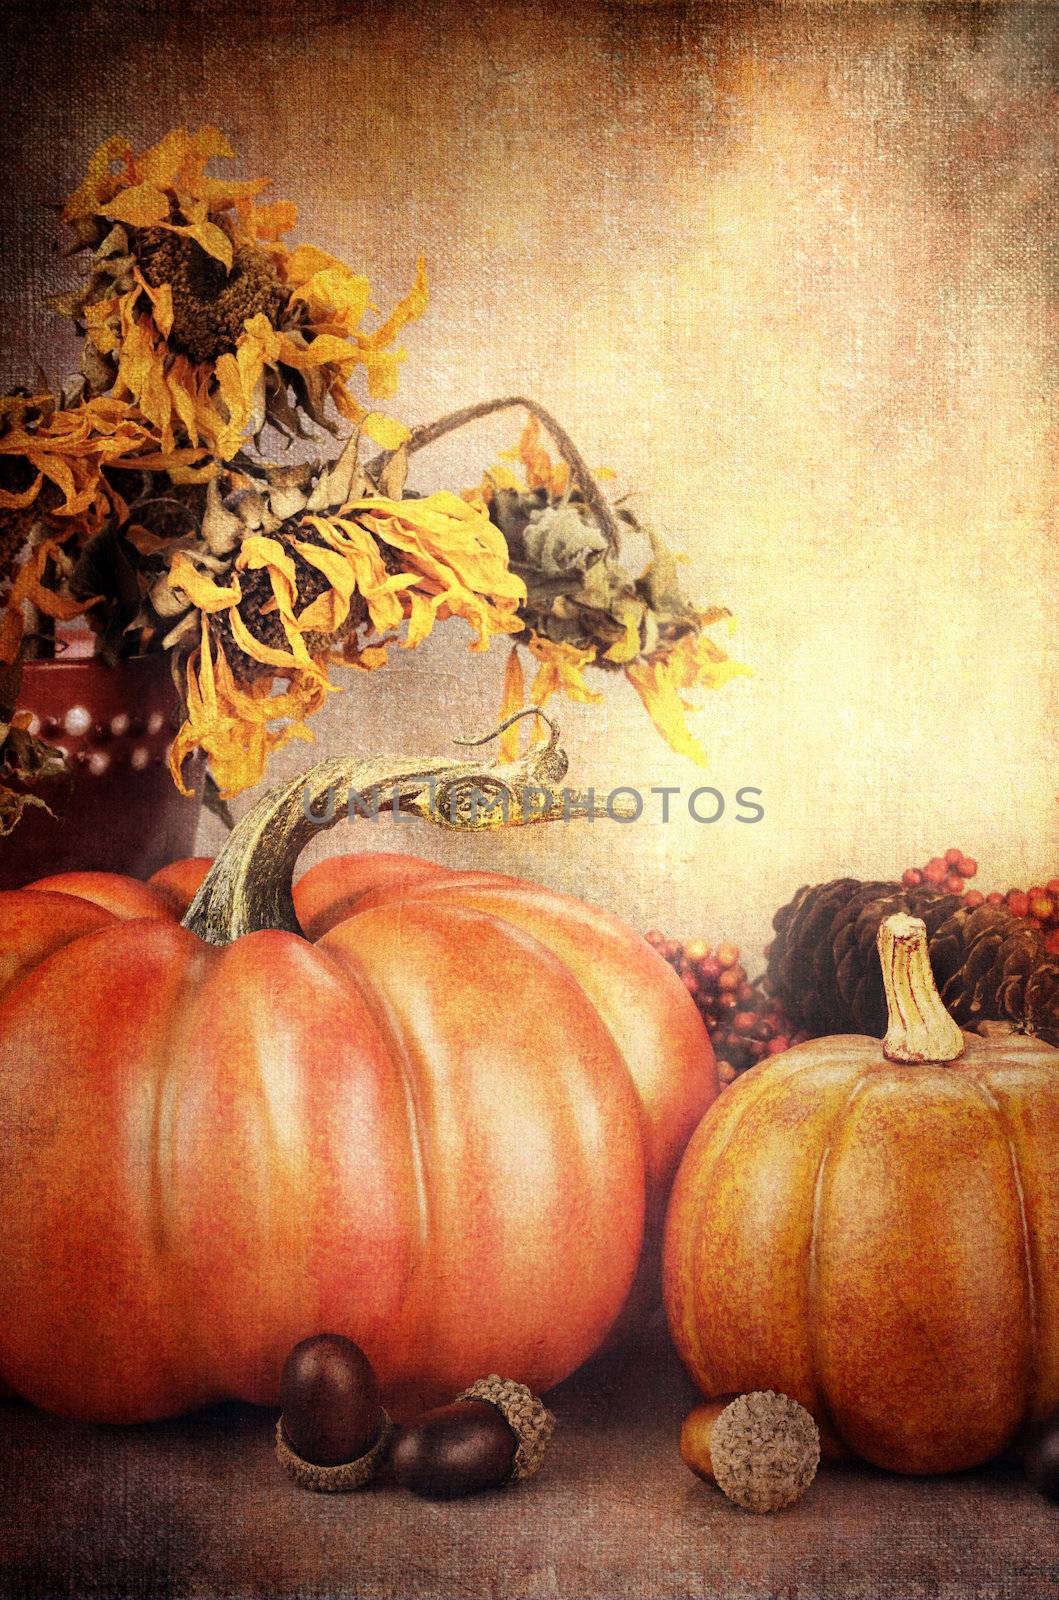 Pretty Autumn Display by StephanieFrey